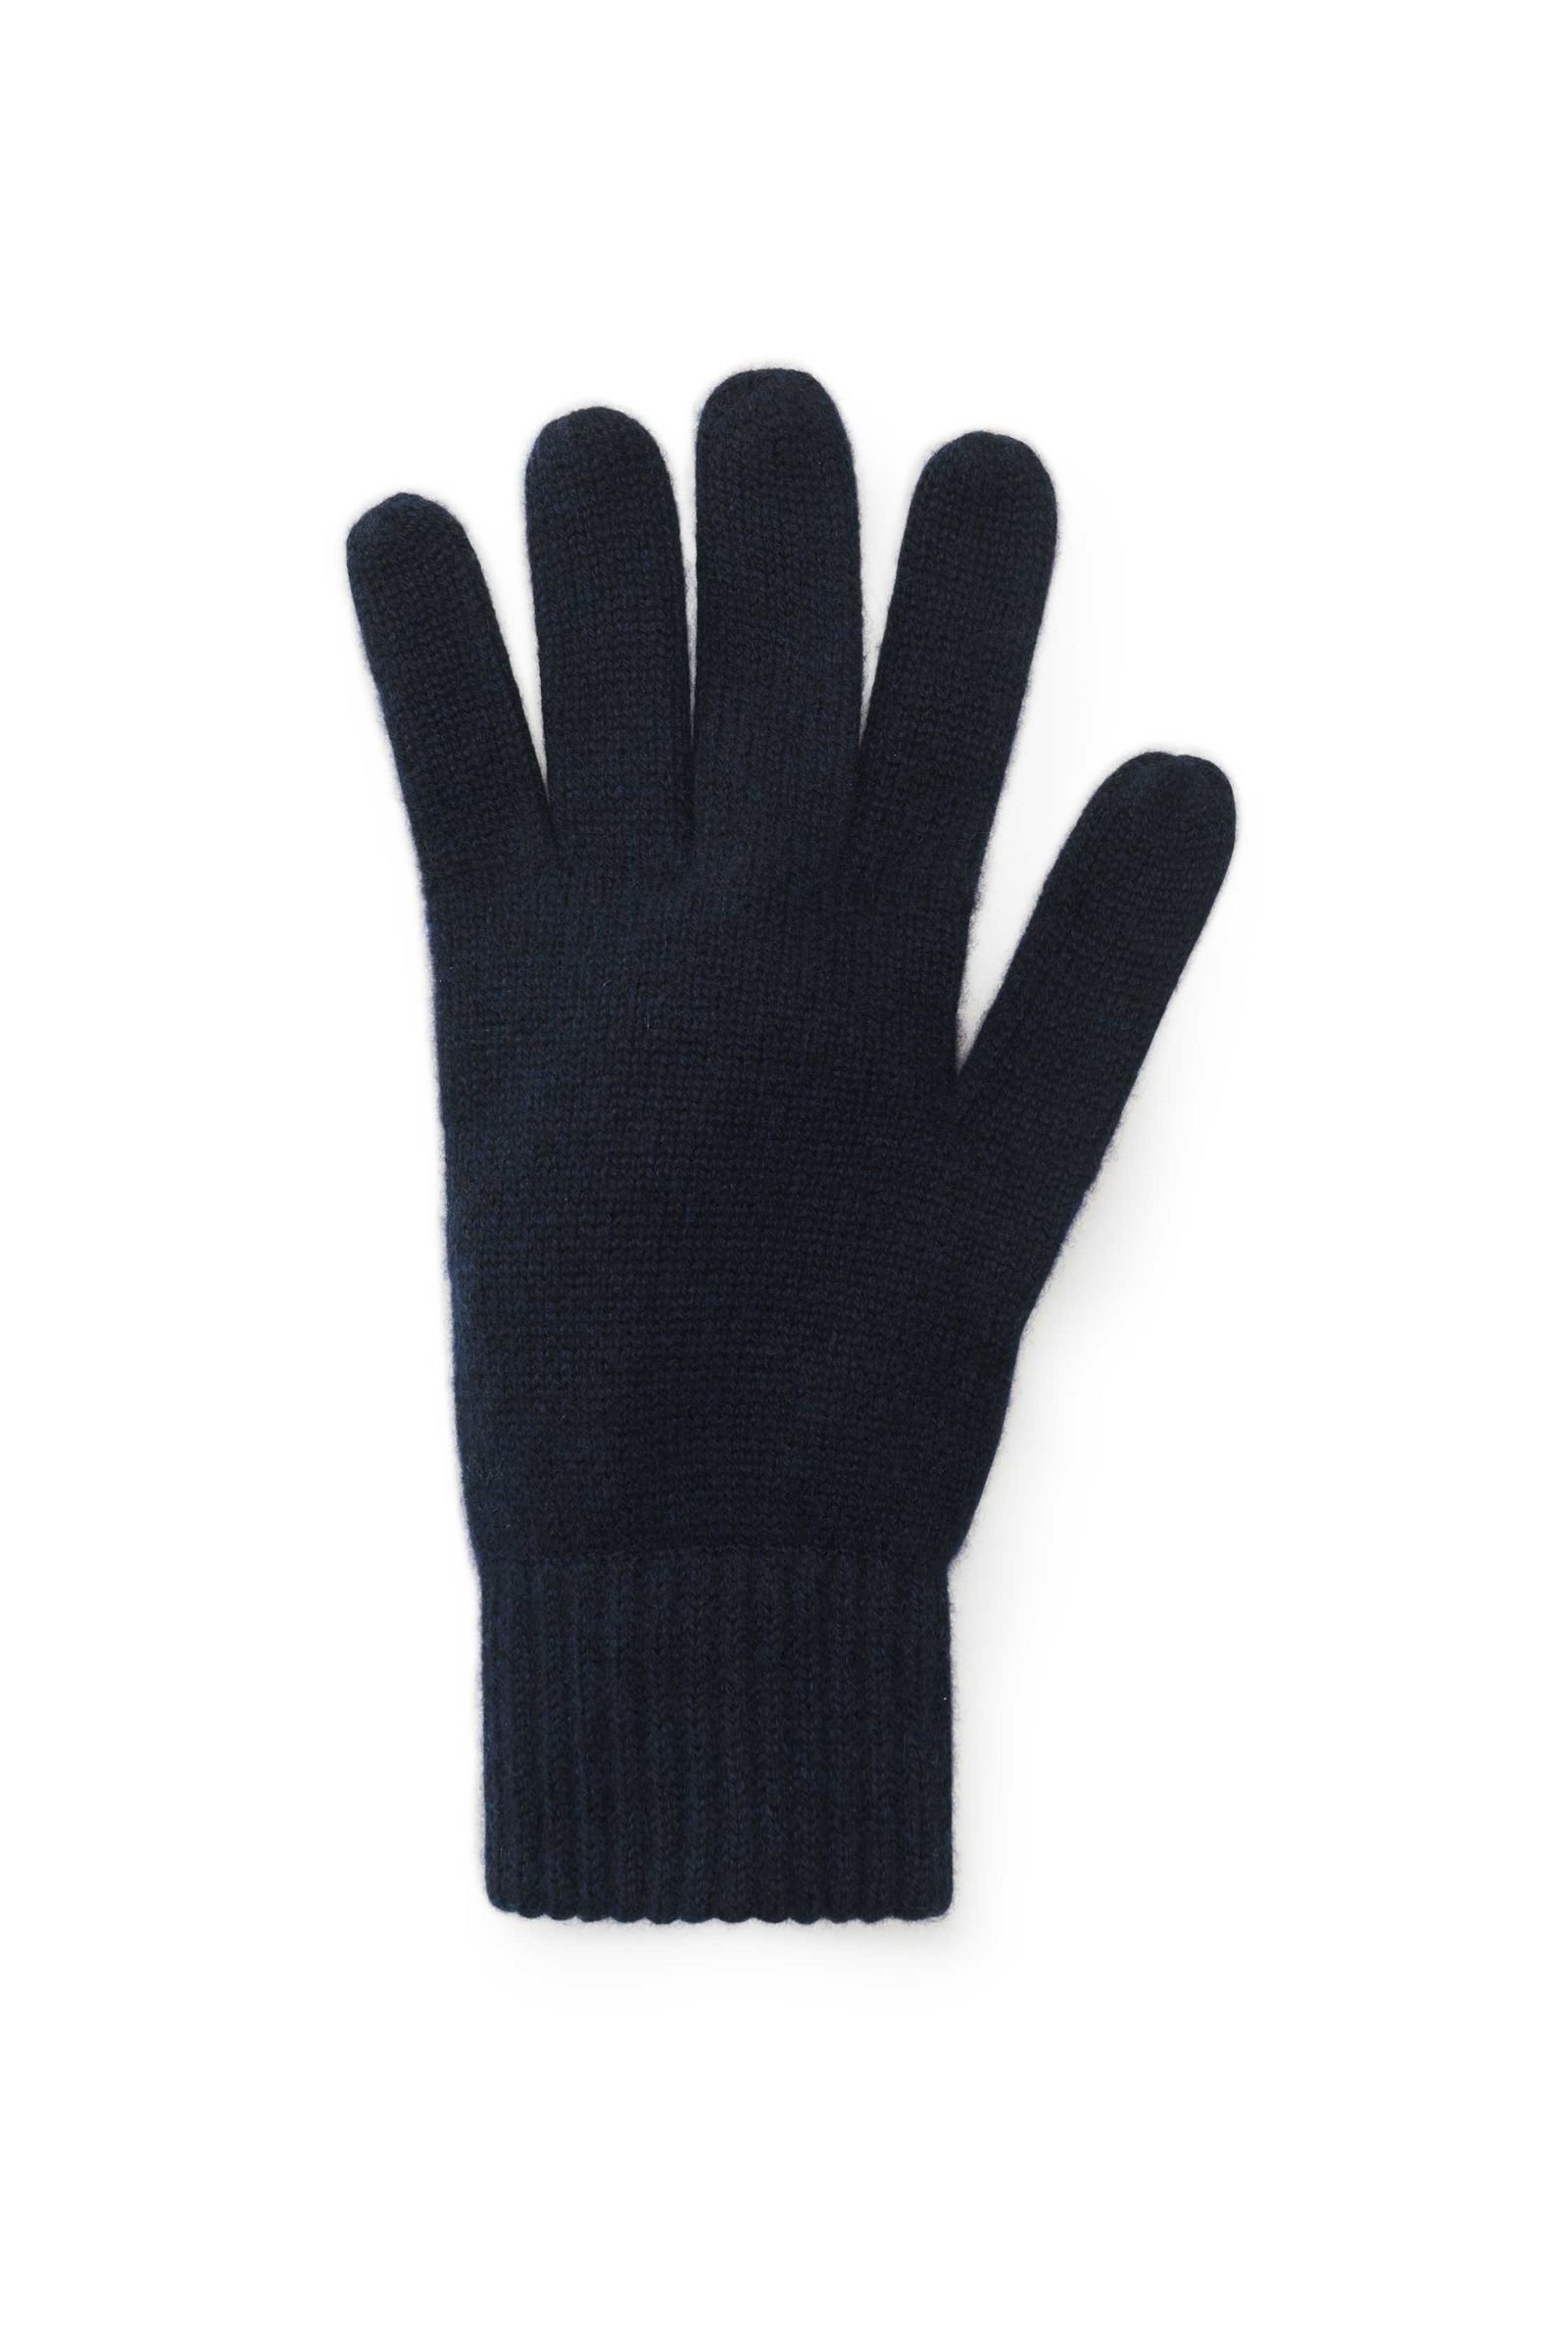 Cashmere gloves navy